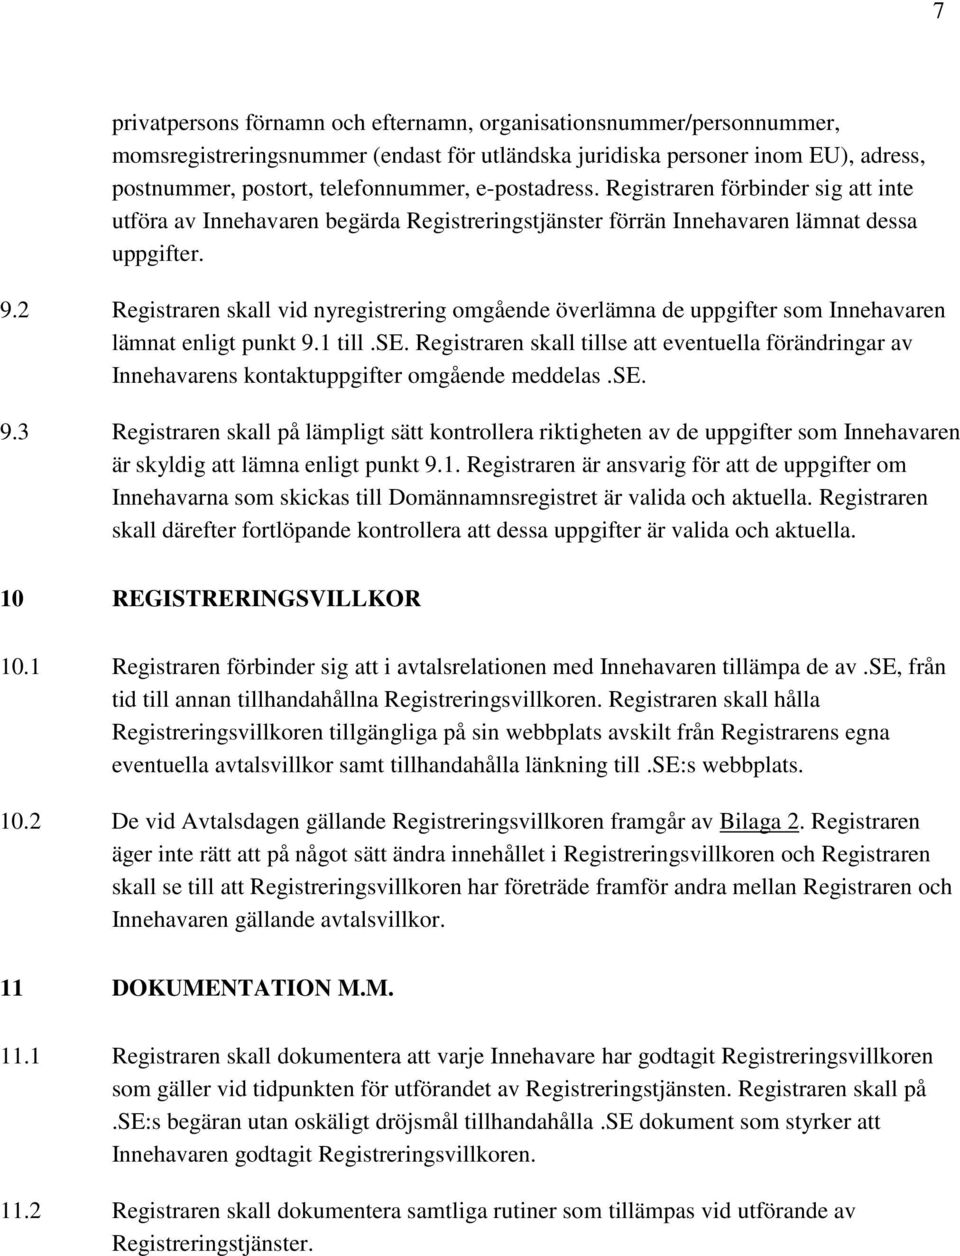 2 Registraren skall vid nyregistrering omgående överlämna de uppgifter som Innehavaren lämnat enligt punkt 9.1 till.se.